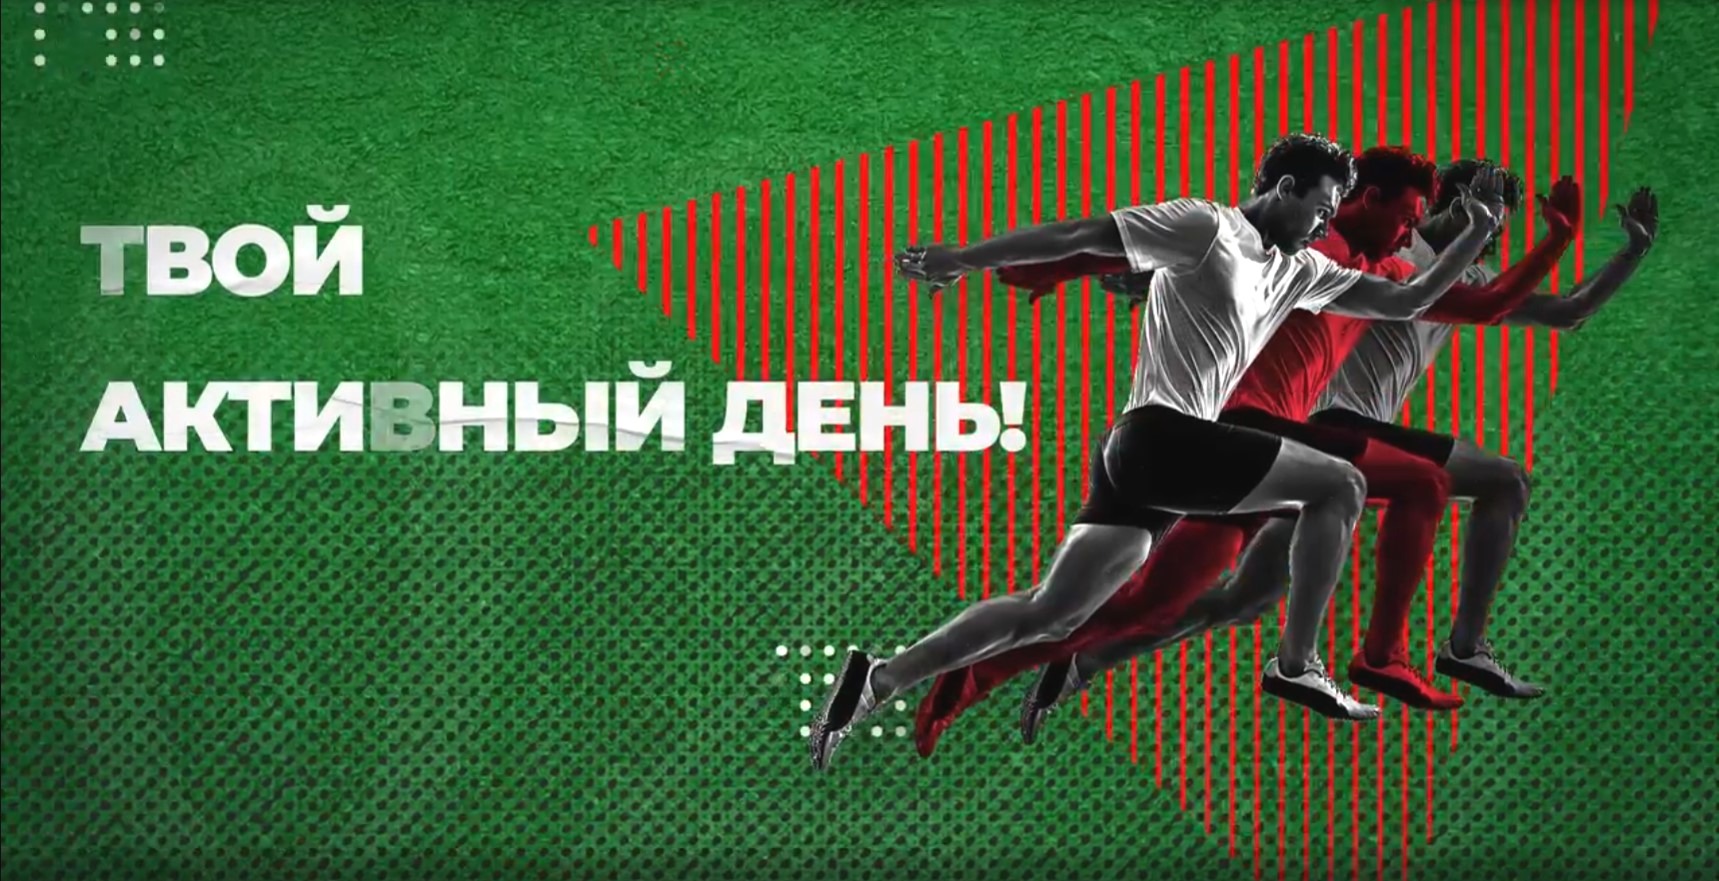 Каждый россиянин сможет принять участие в марафоне «Твой активный день!» 